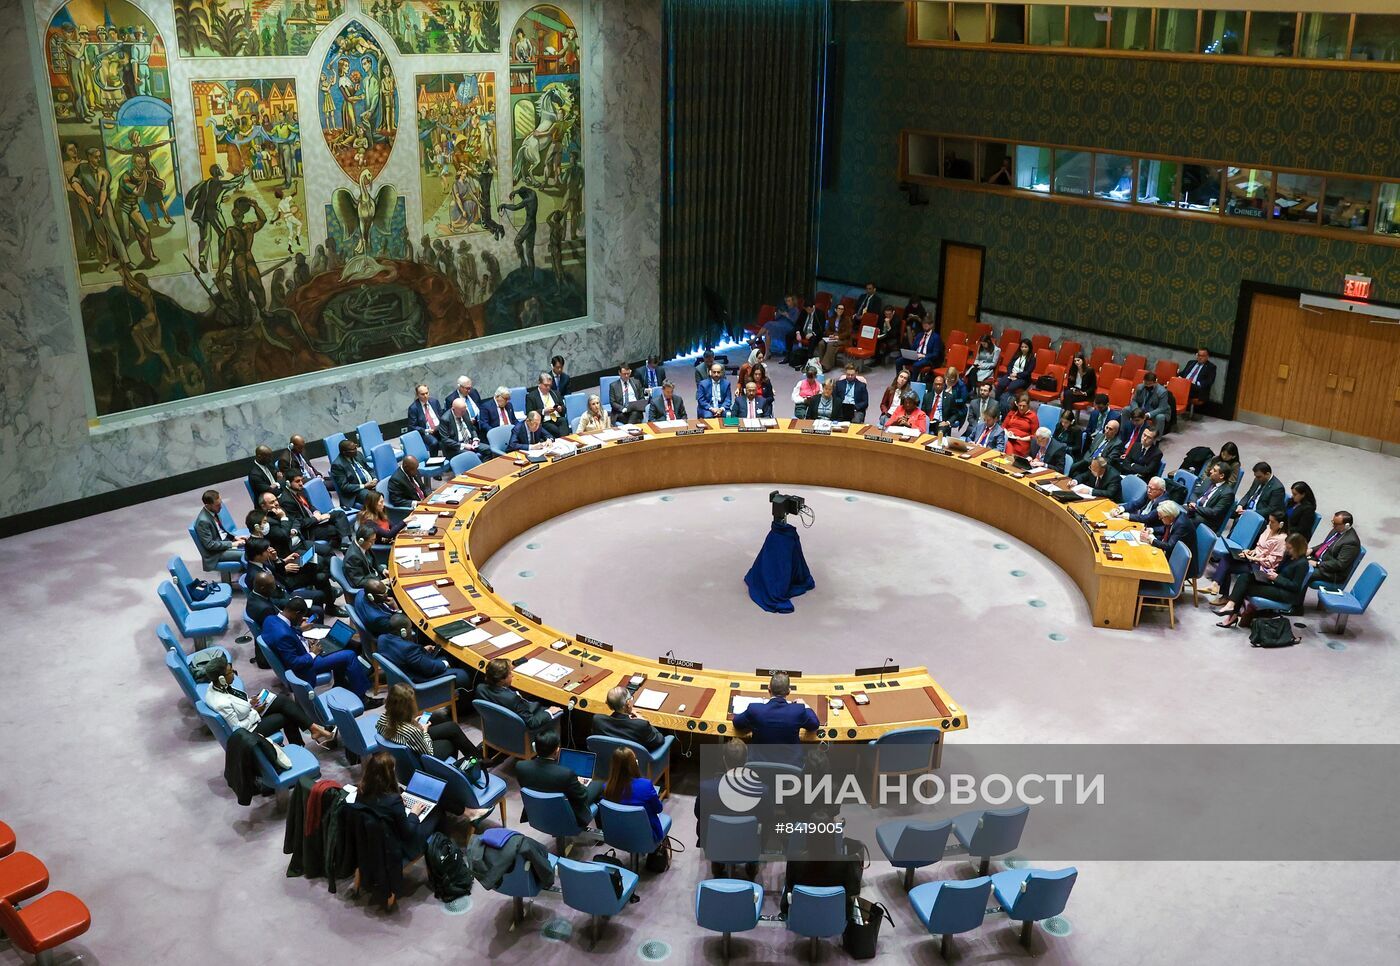 بايدن يعتزم طرح مسألة تغيير هيكلية مجلس الأمن الدولي